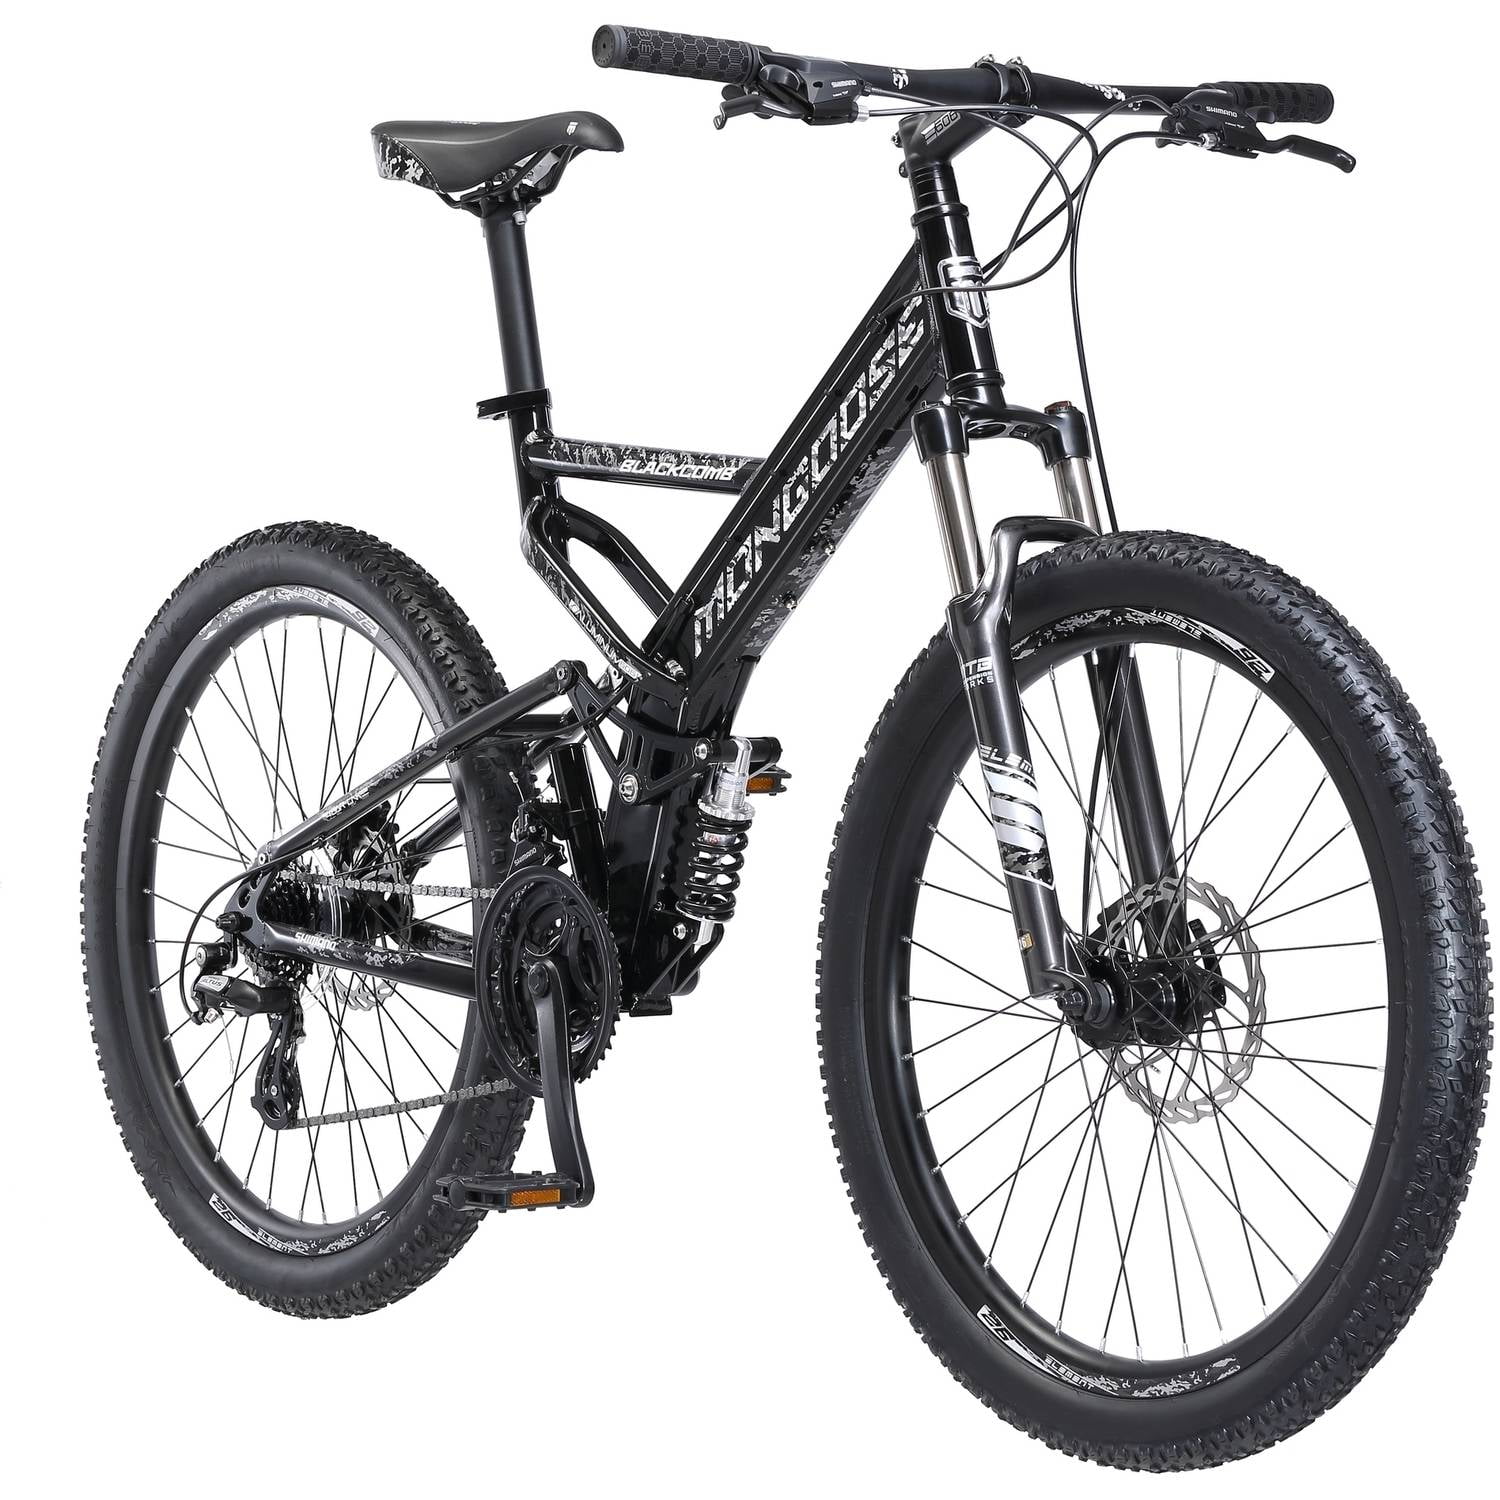 Mongoose Mountain Bike, 26inch wheels, 24 speeds, Black, Men